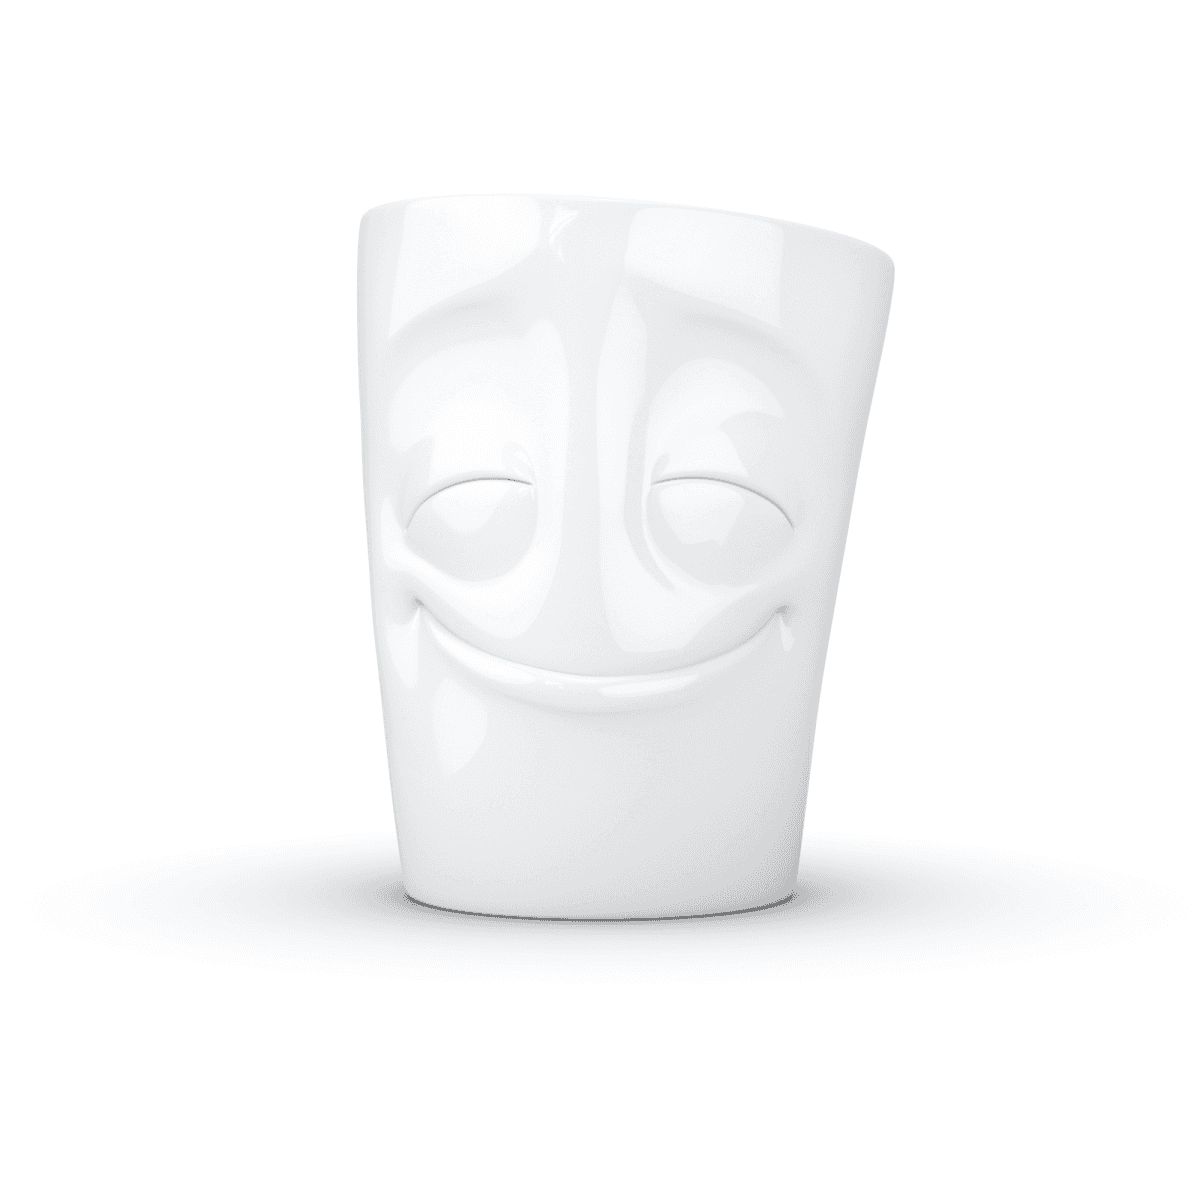 Immagine del prodotto Mug Allegro 3D in Porcellana 350 ml con Manico | TASSEN By Fiftyeight Products